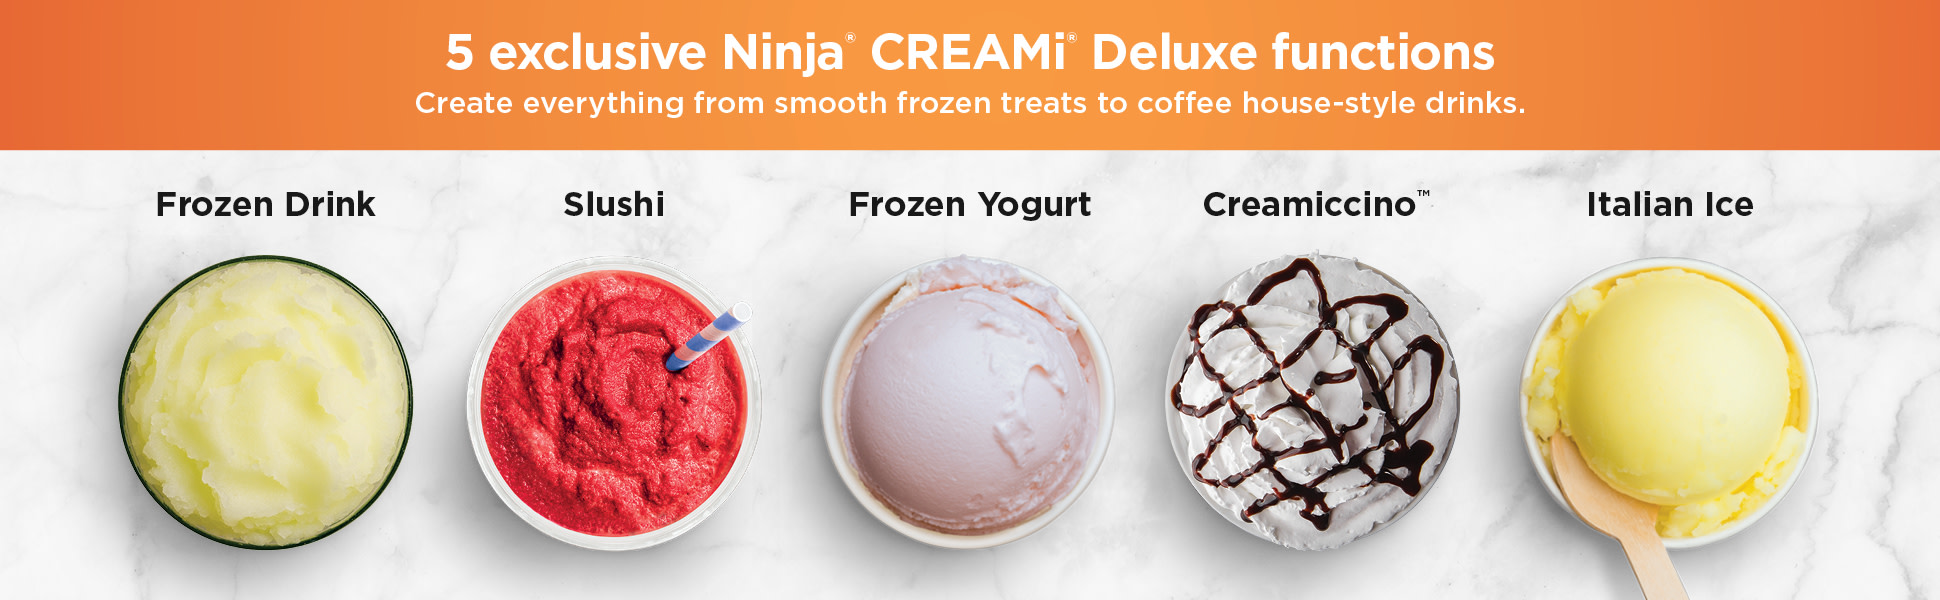 Ninja CREAMi Deluxe 11-in-1 Ice Cream and Frozen Treat Maker Silver NC501 -  Best Buy